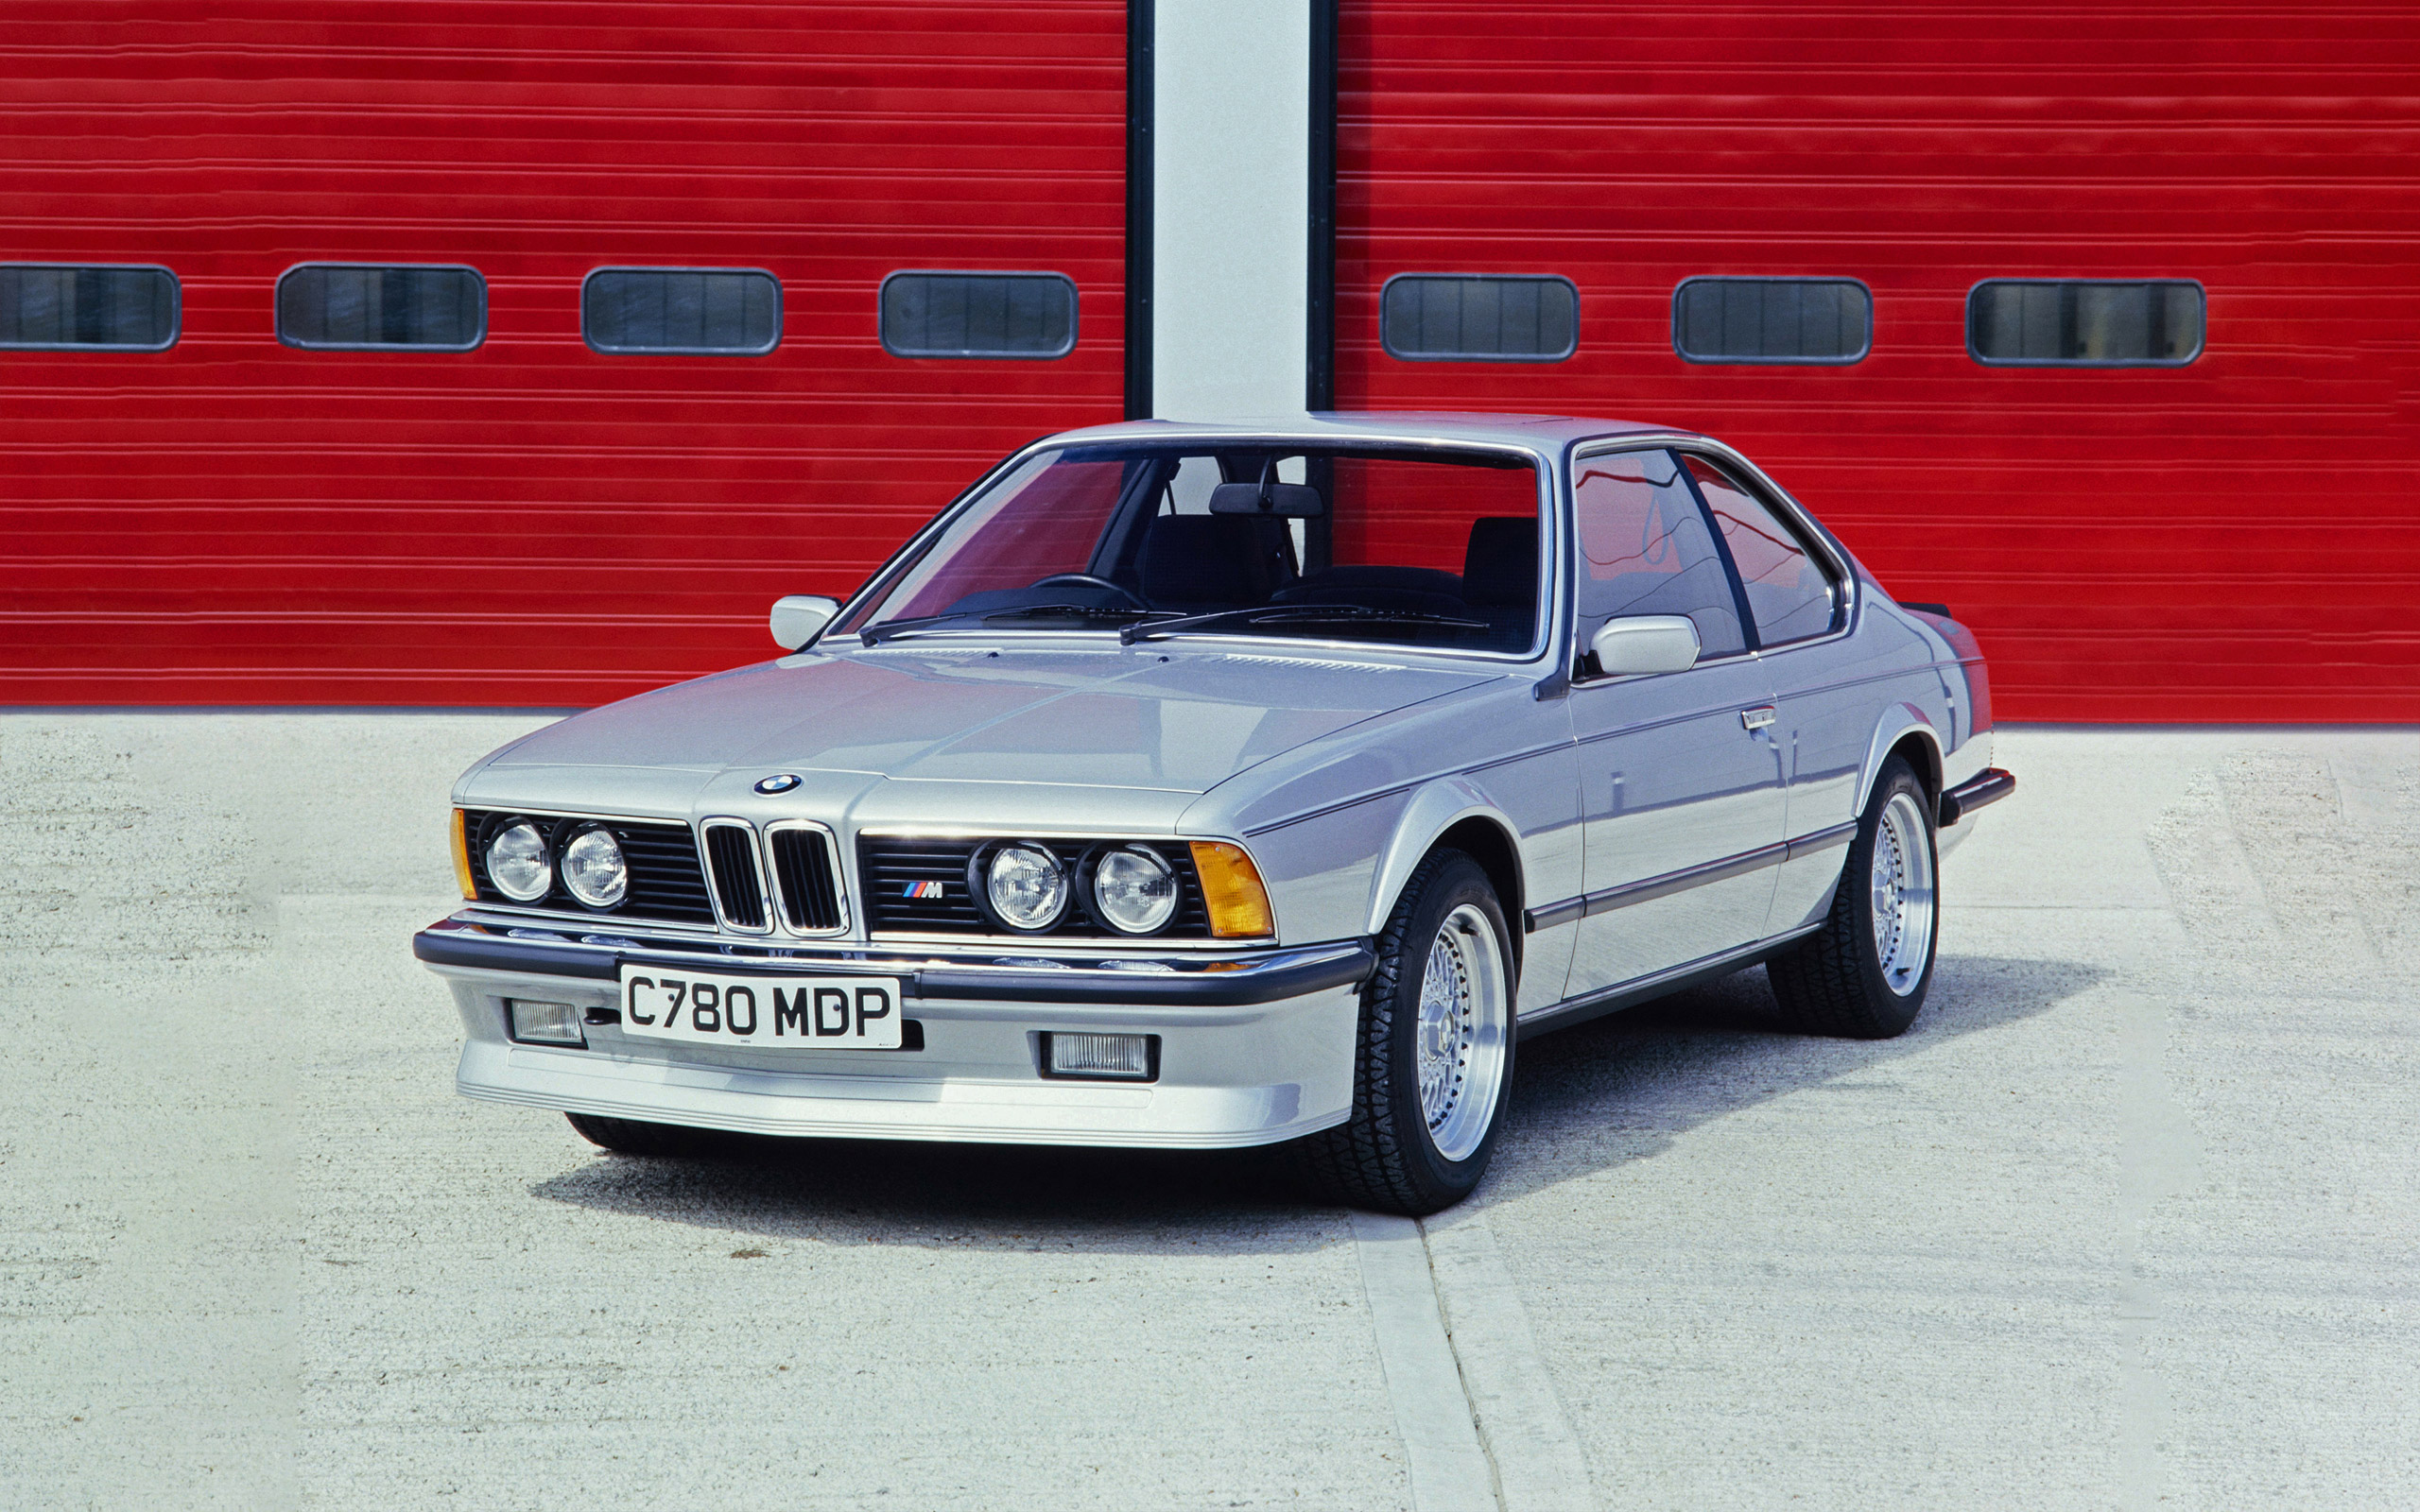  1987 BMW M635 CSi Wallpaper.